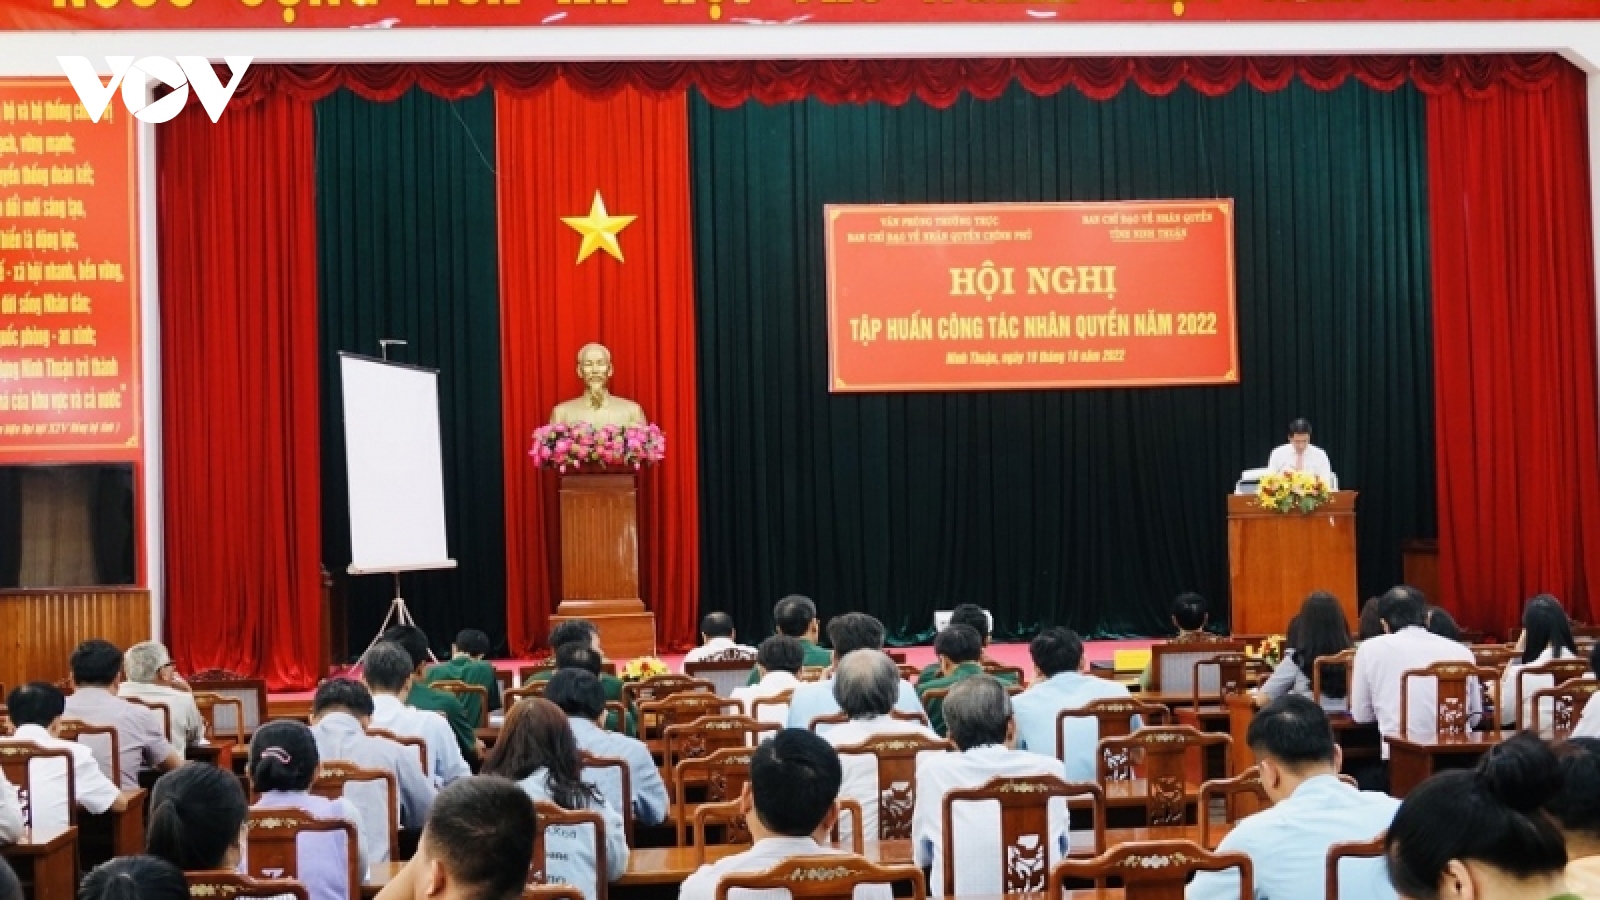 Hơn 200 đại biểu ở Ninh Thuận dự tập huấn về quyền con người 